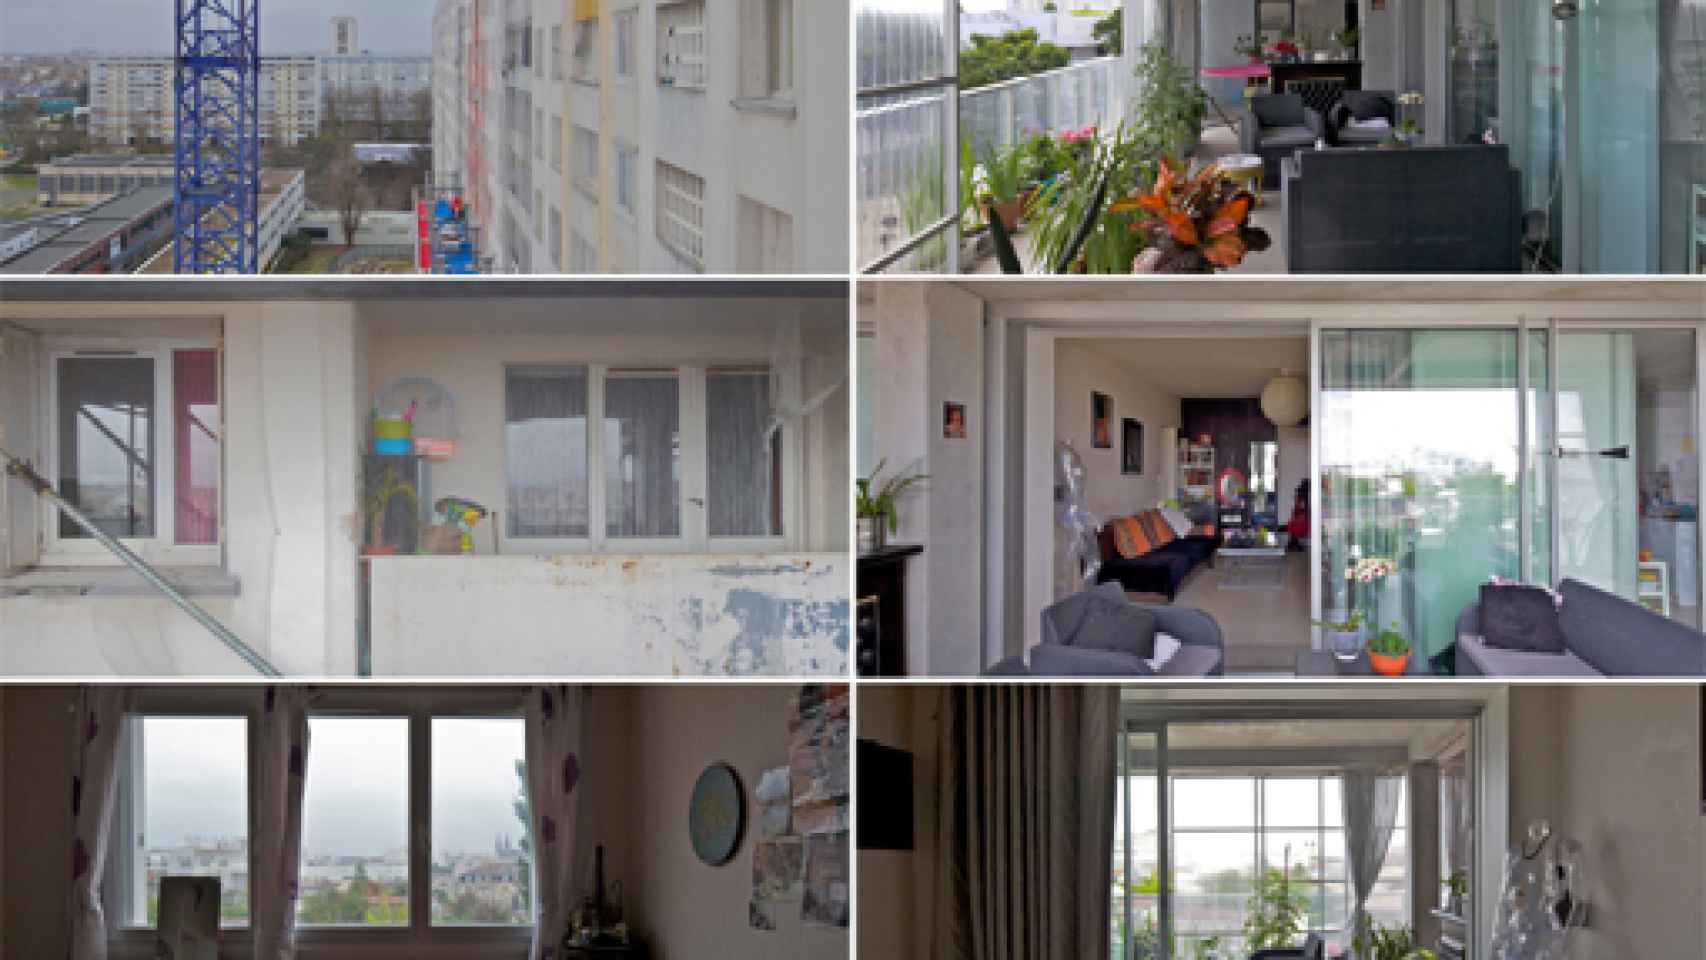 Image: La transformación de tres bloques de viviendas sociales, Premio Mies van der Rohe 2019